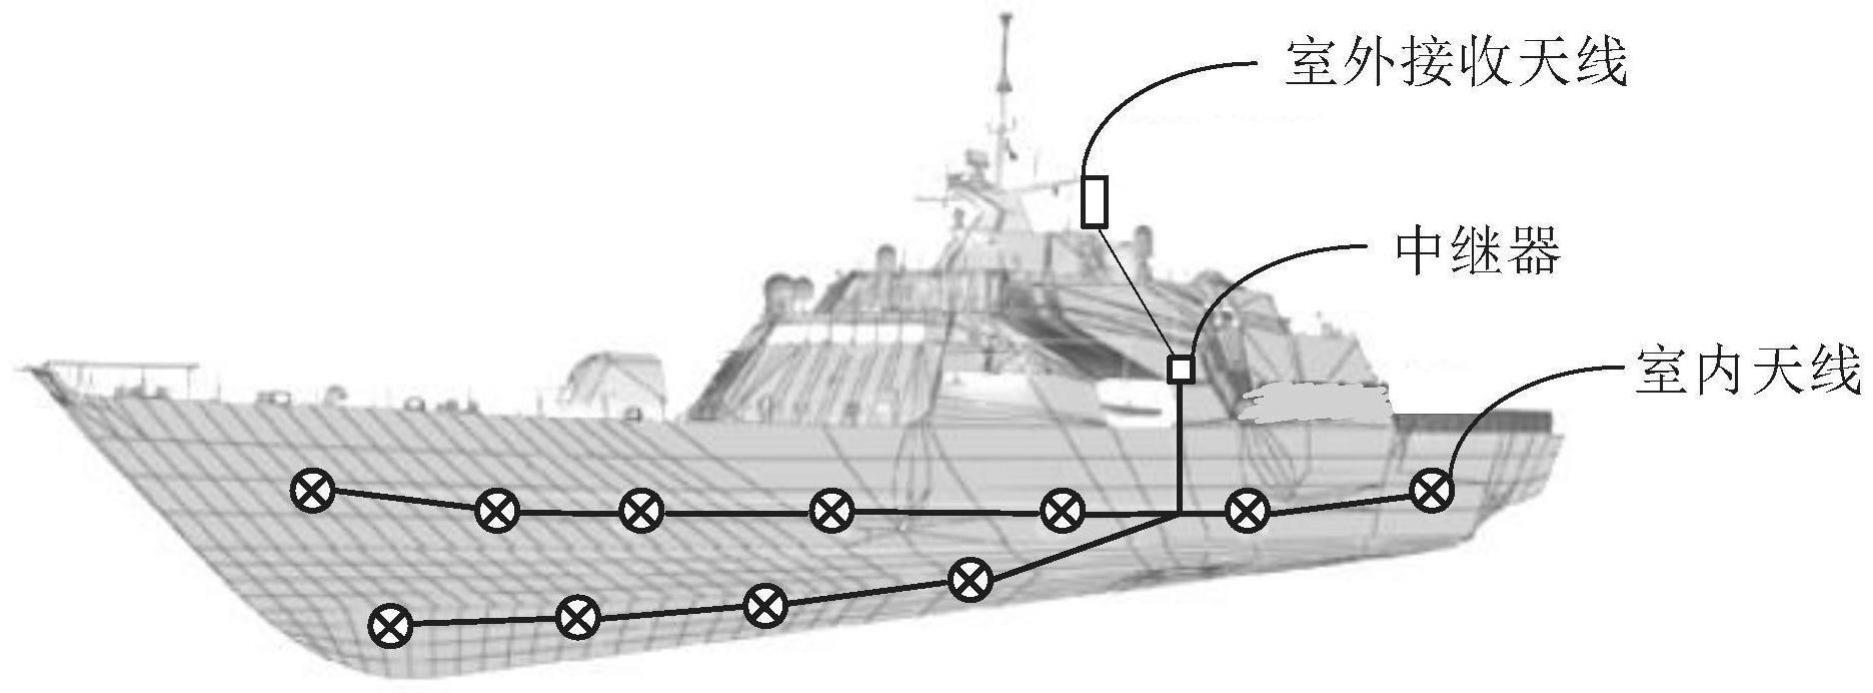 信号覆盖系统及船舶的制作方法